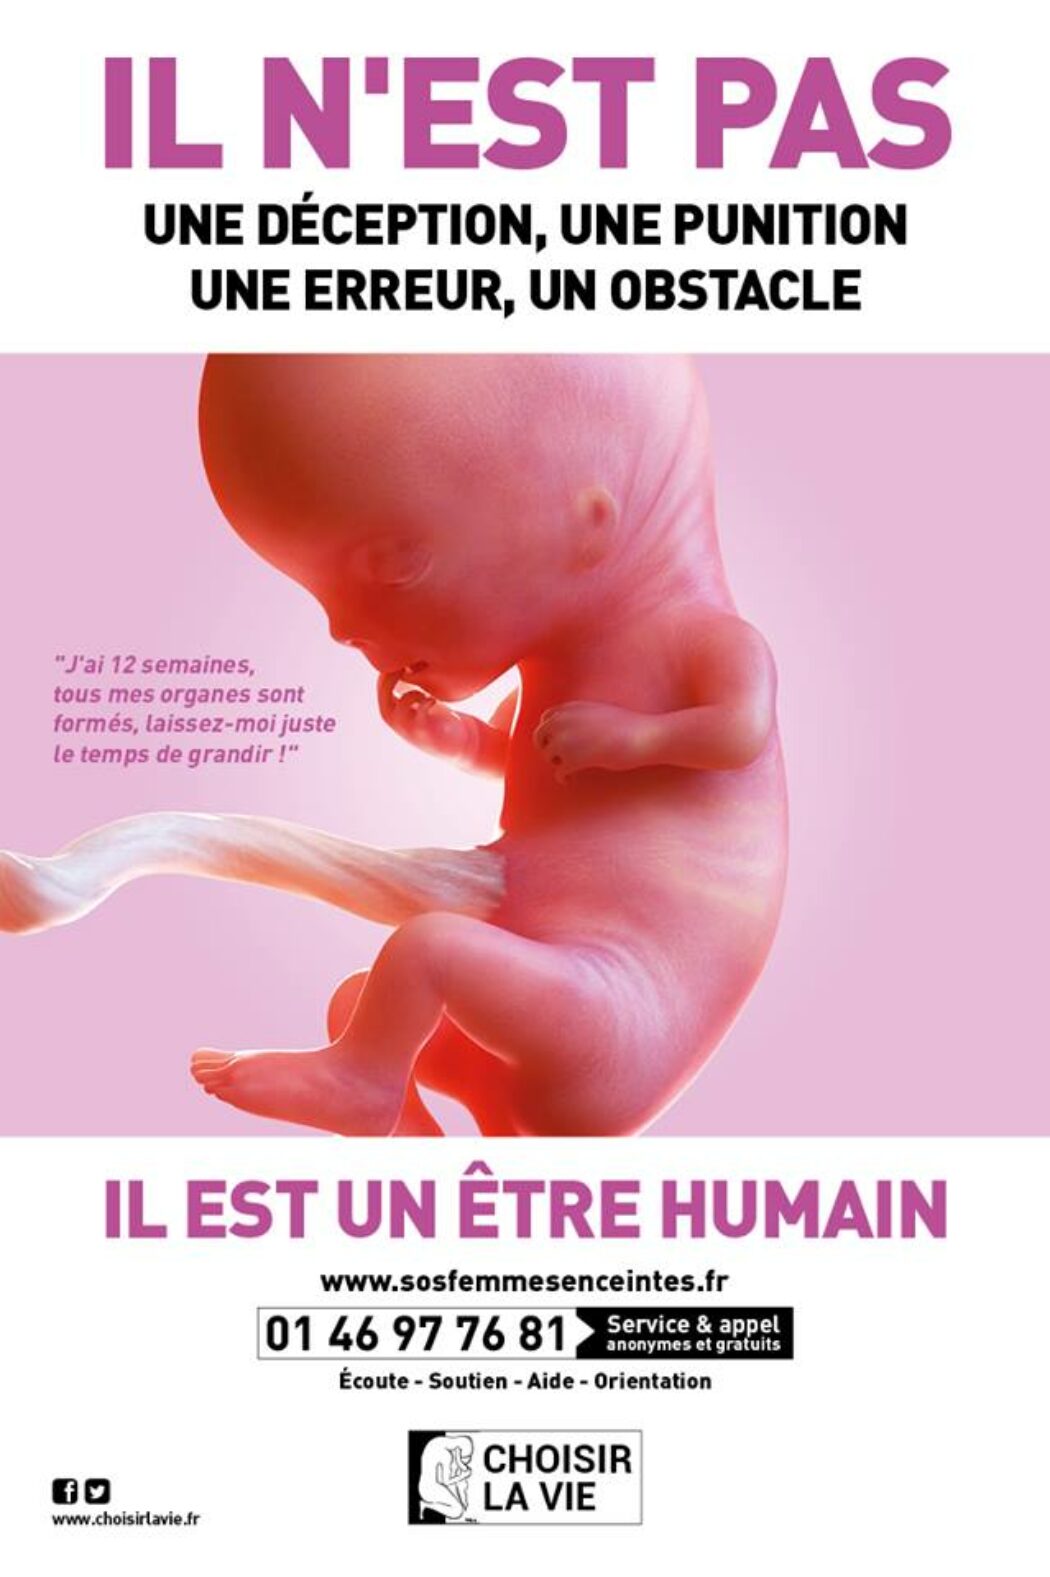 Il paraît qu’il est plus difficile d’avorter en Europe